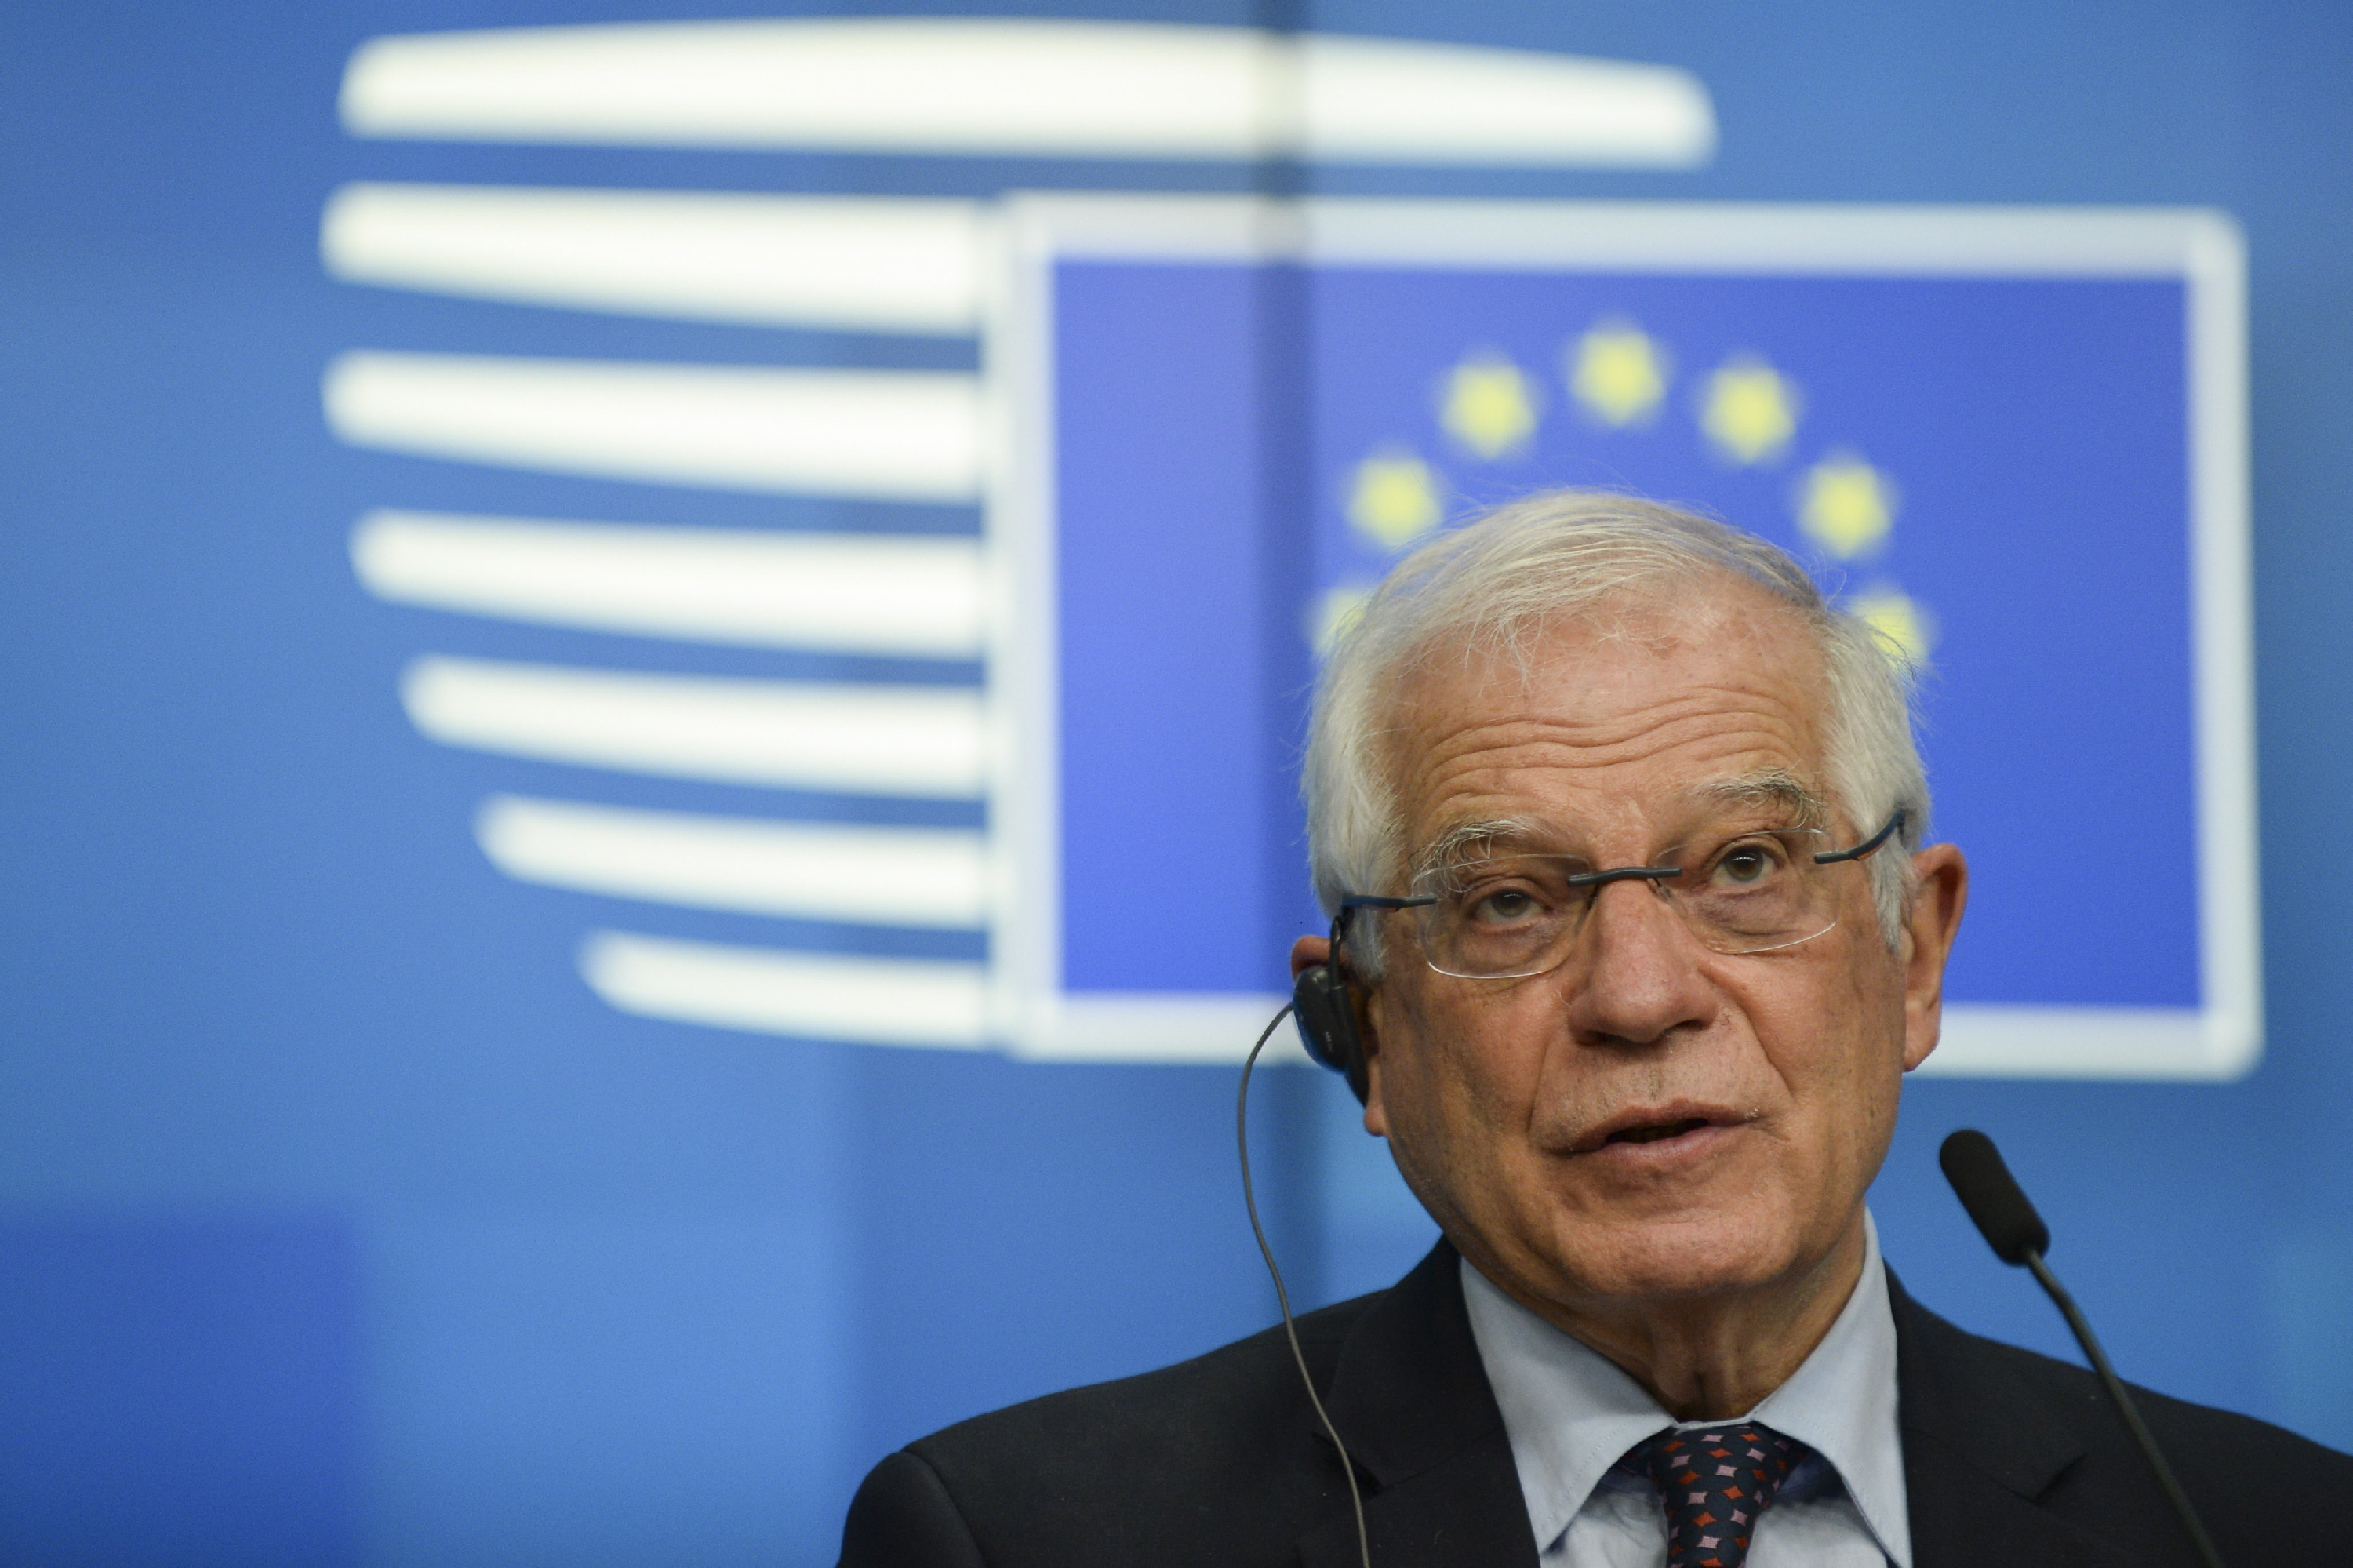 Josep Borrell: az EU kész új szankciókat kiszabni Fehéroroszországra, ha Minszk orosz atomfegyvereket fogad